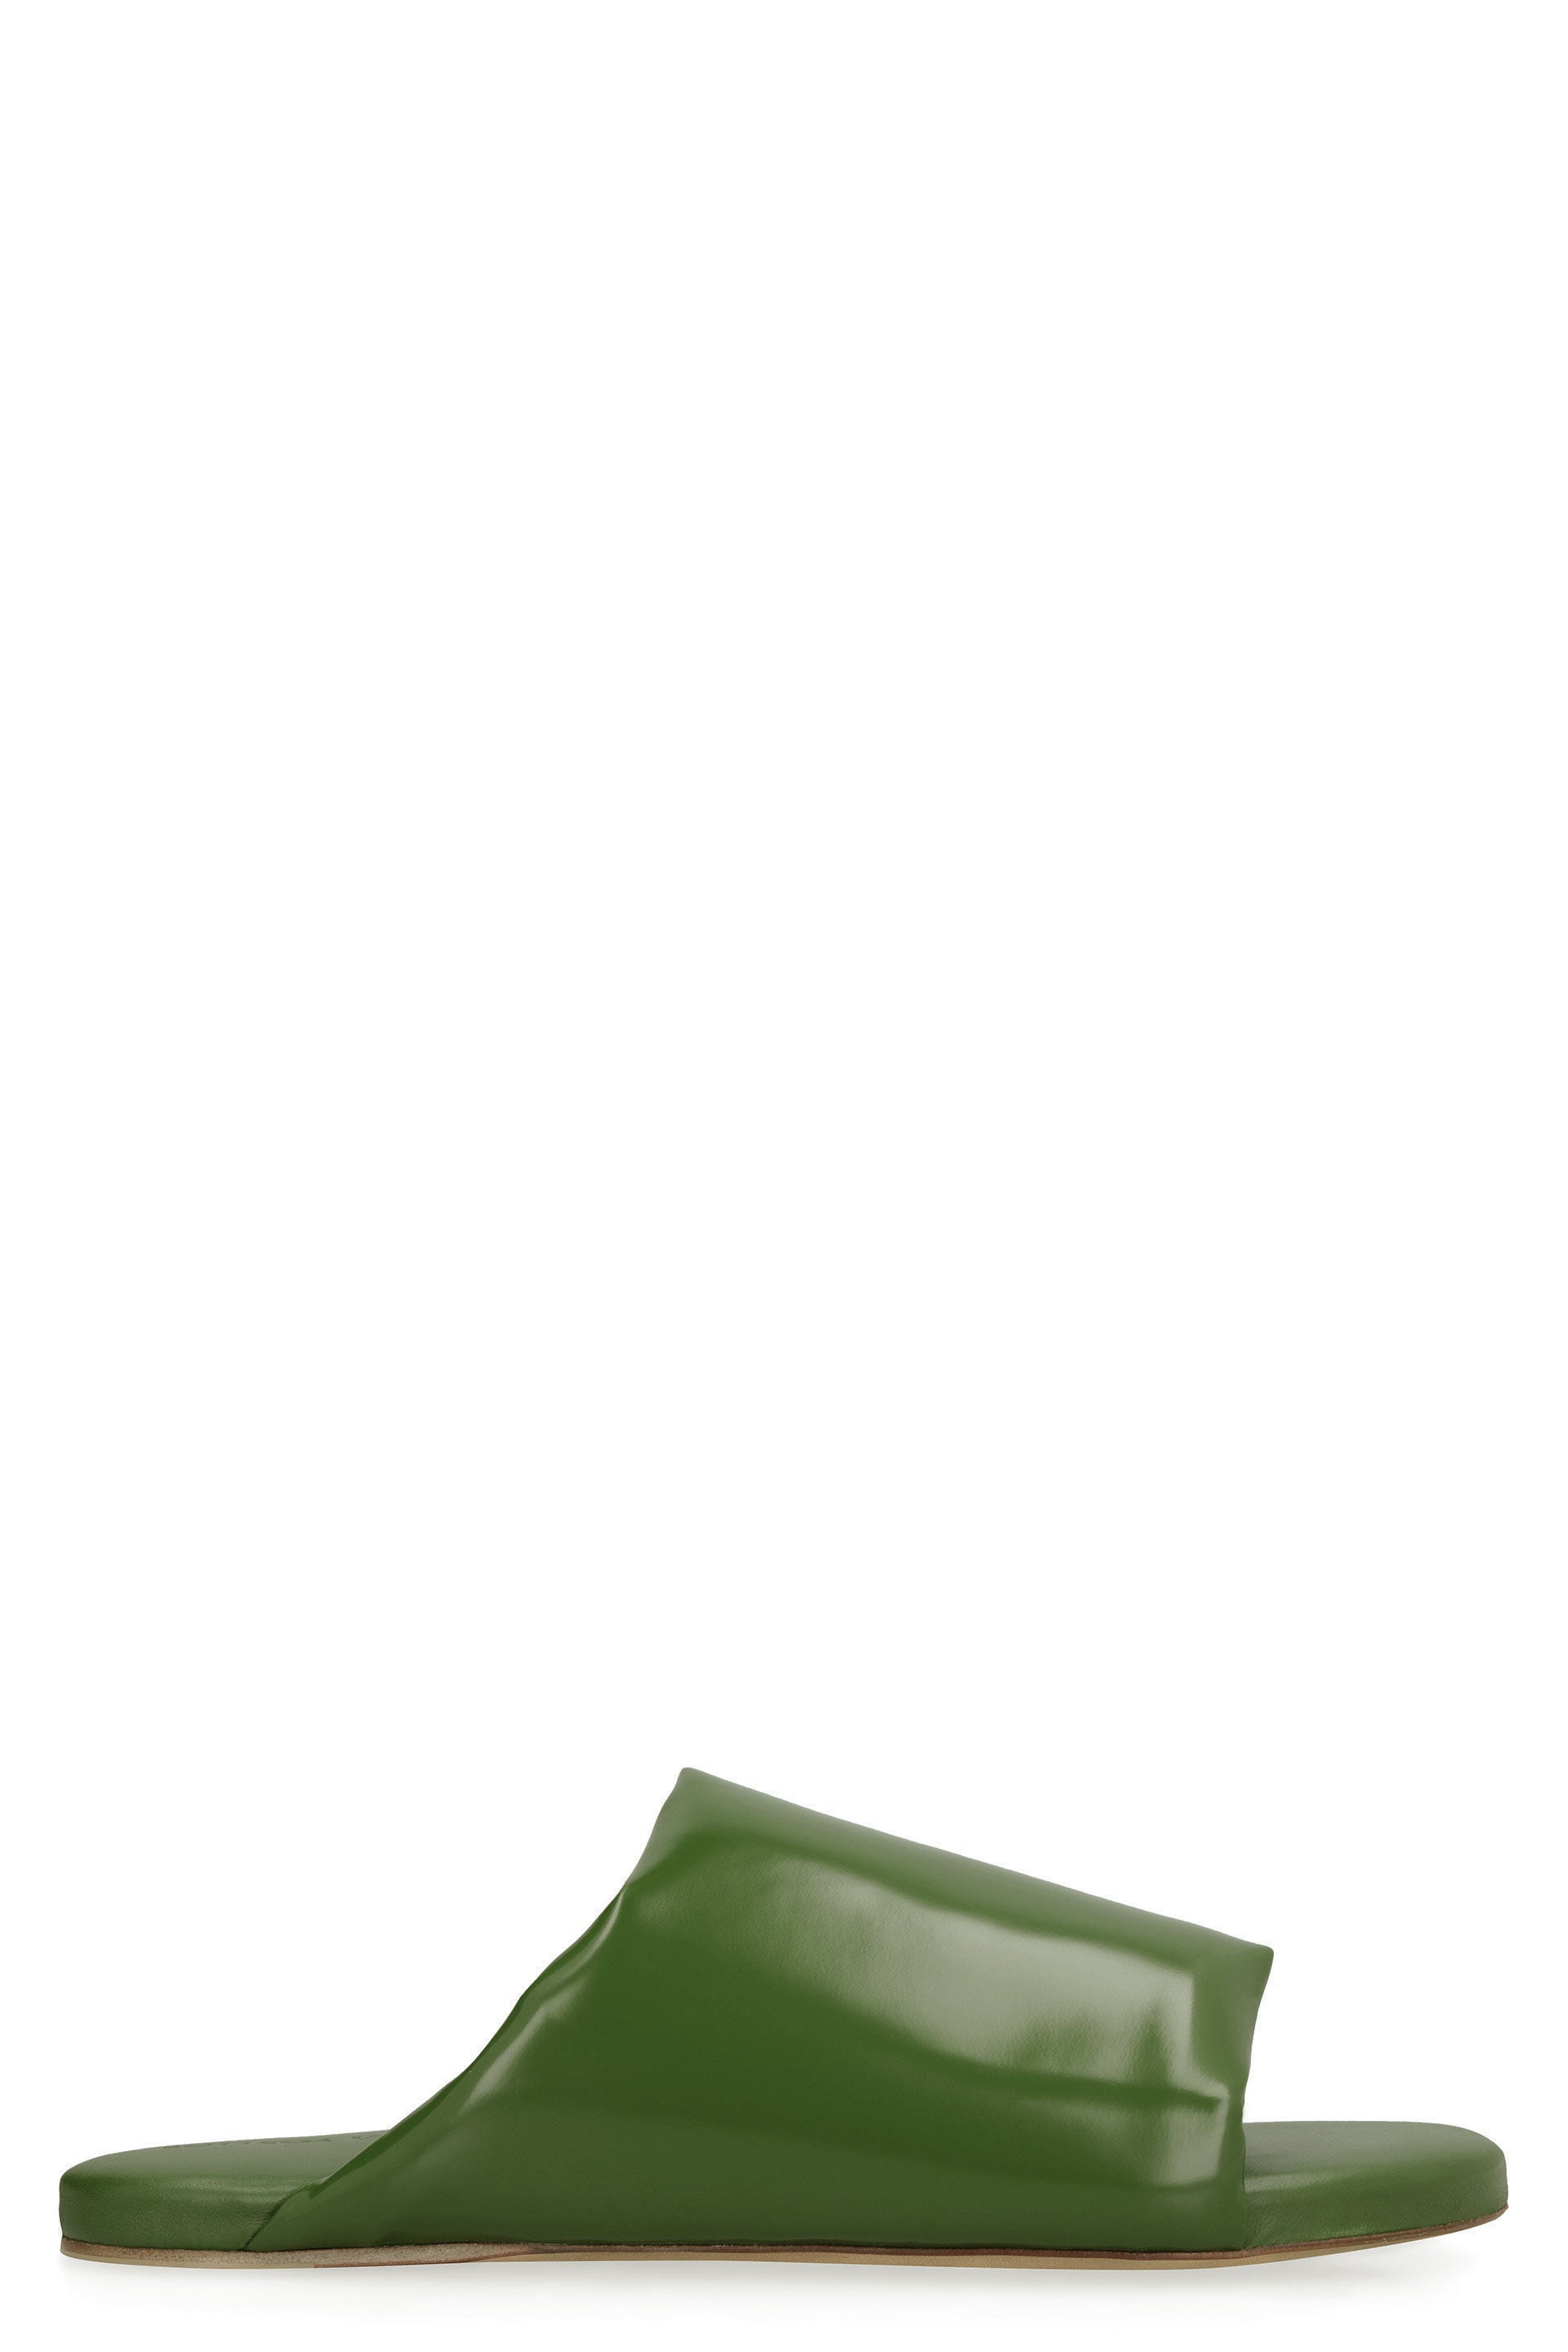 Shop Bottega Veneta Men's Green Padded Leather Sandals For Ss23